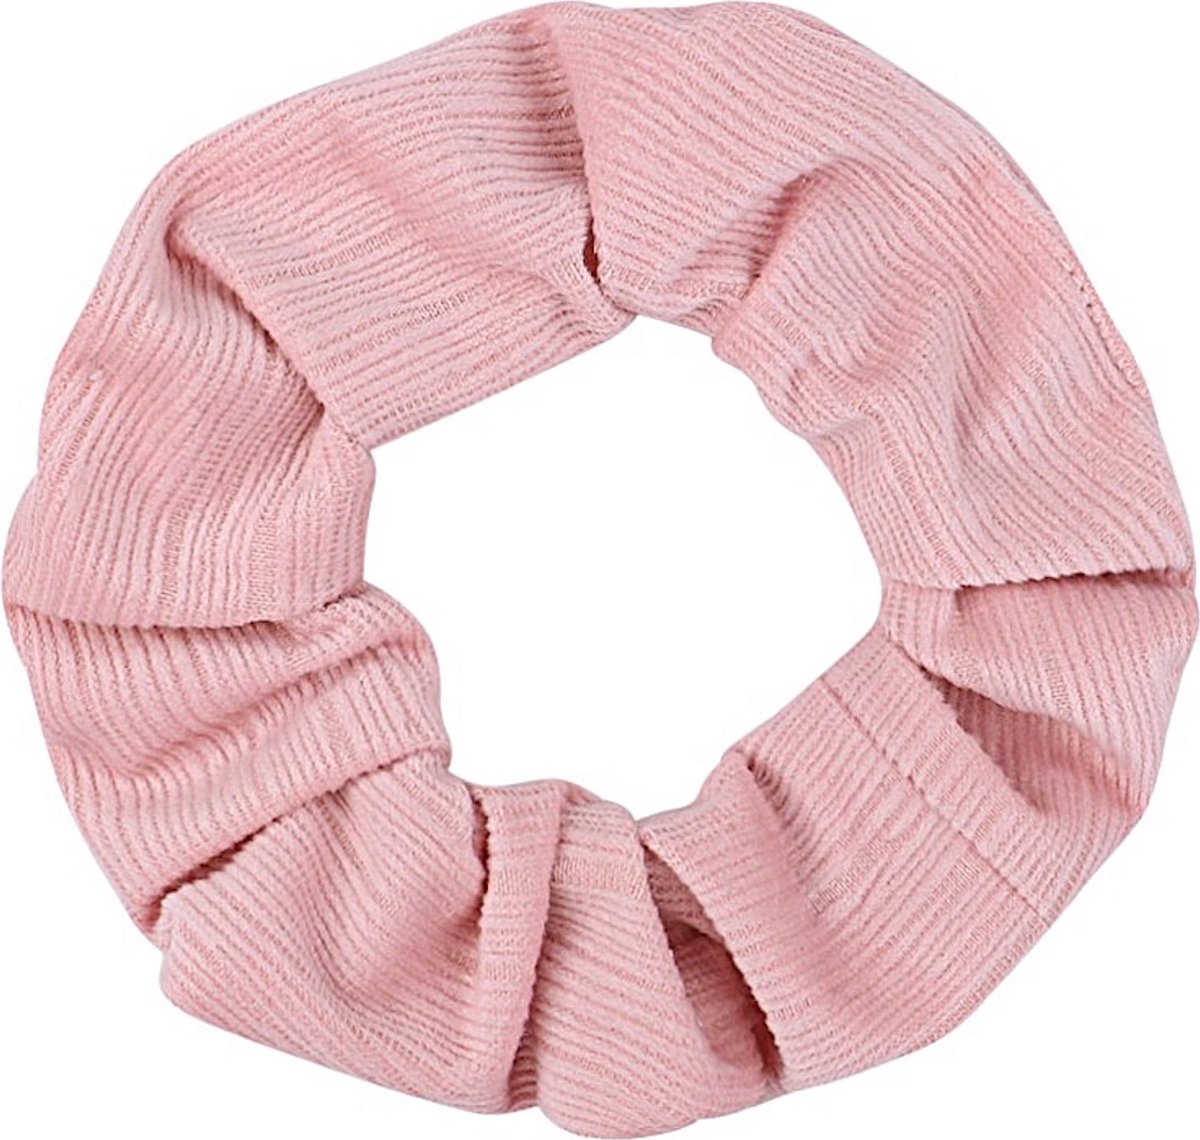 Scrunchie - Roze - Zacht voor je haar en fashionable